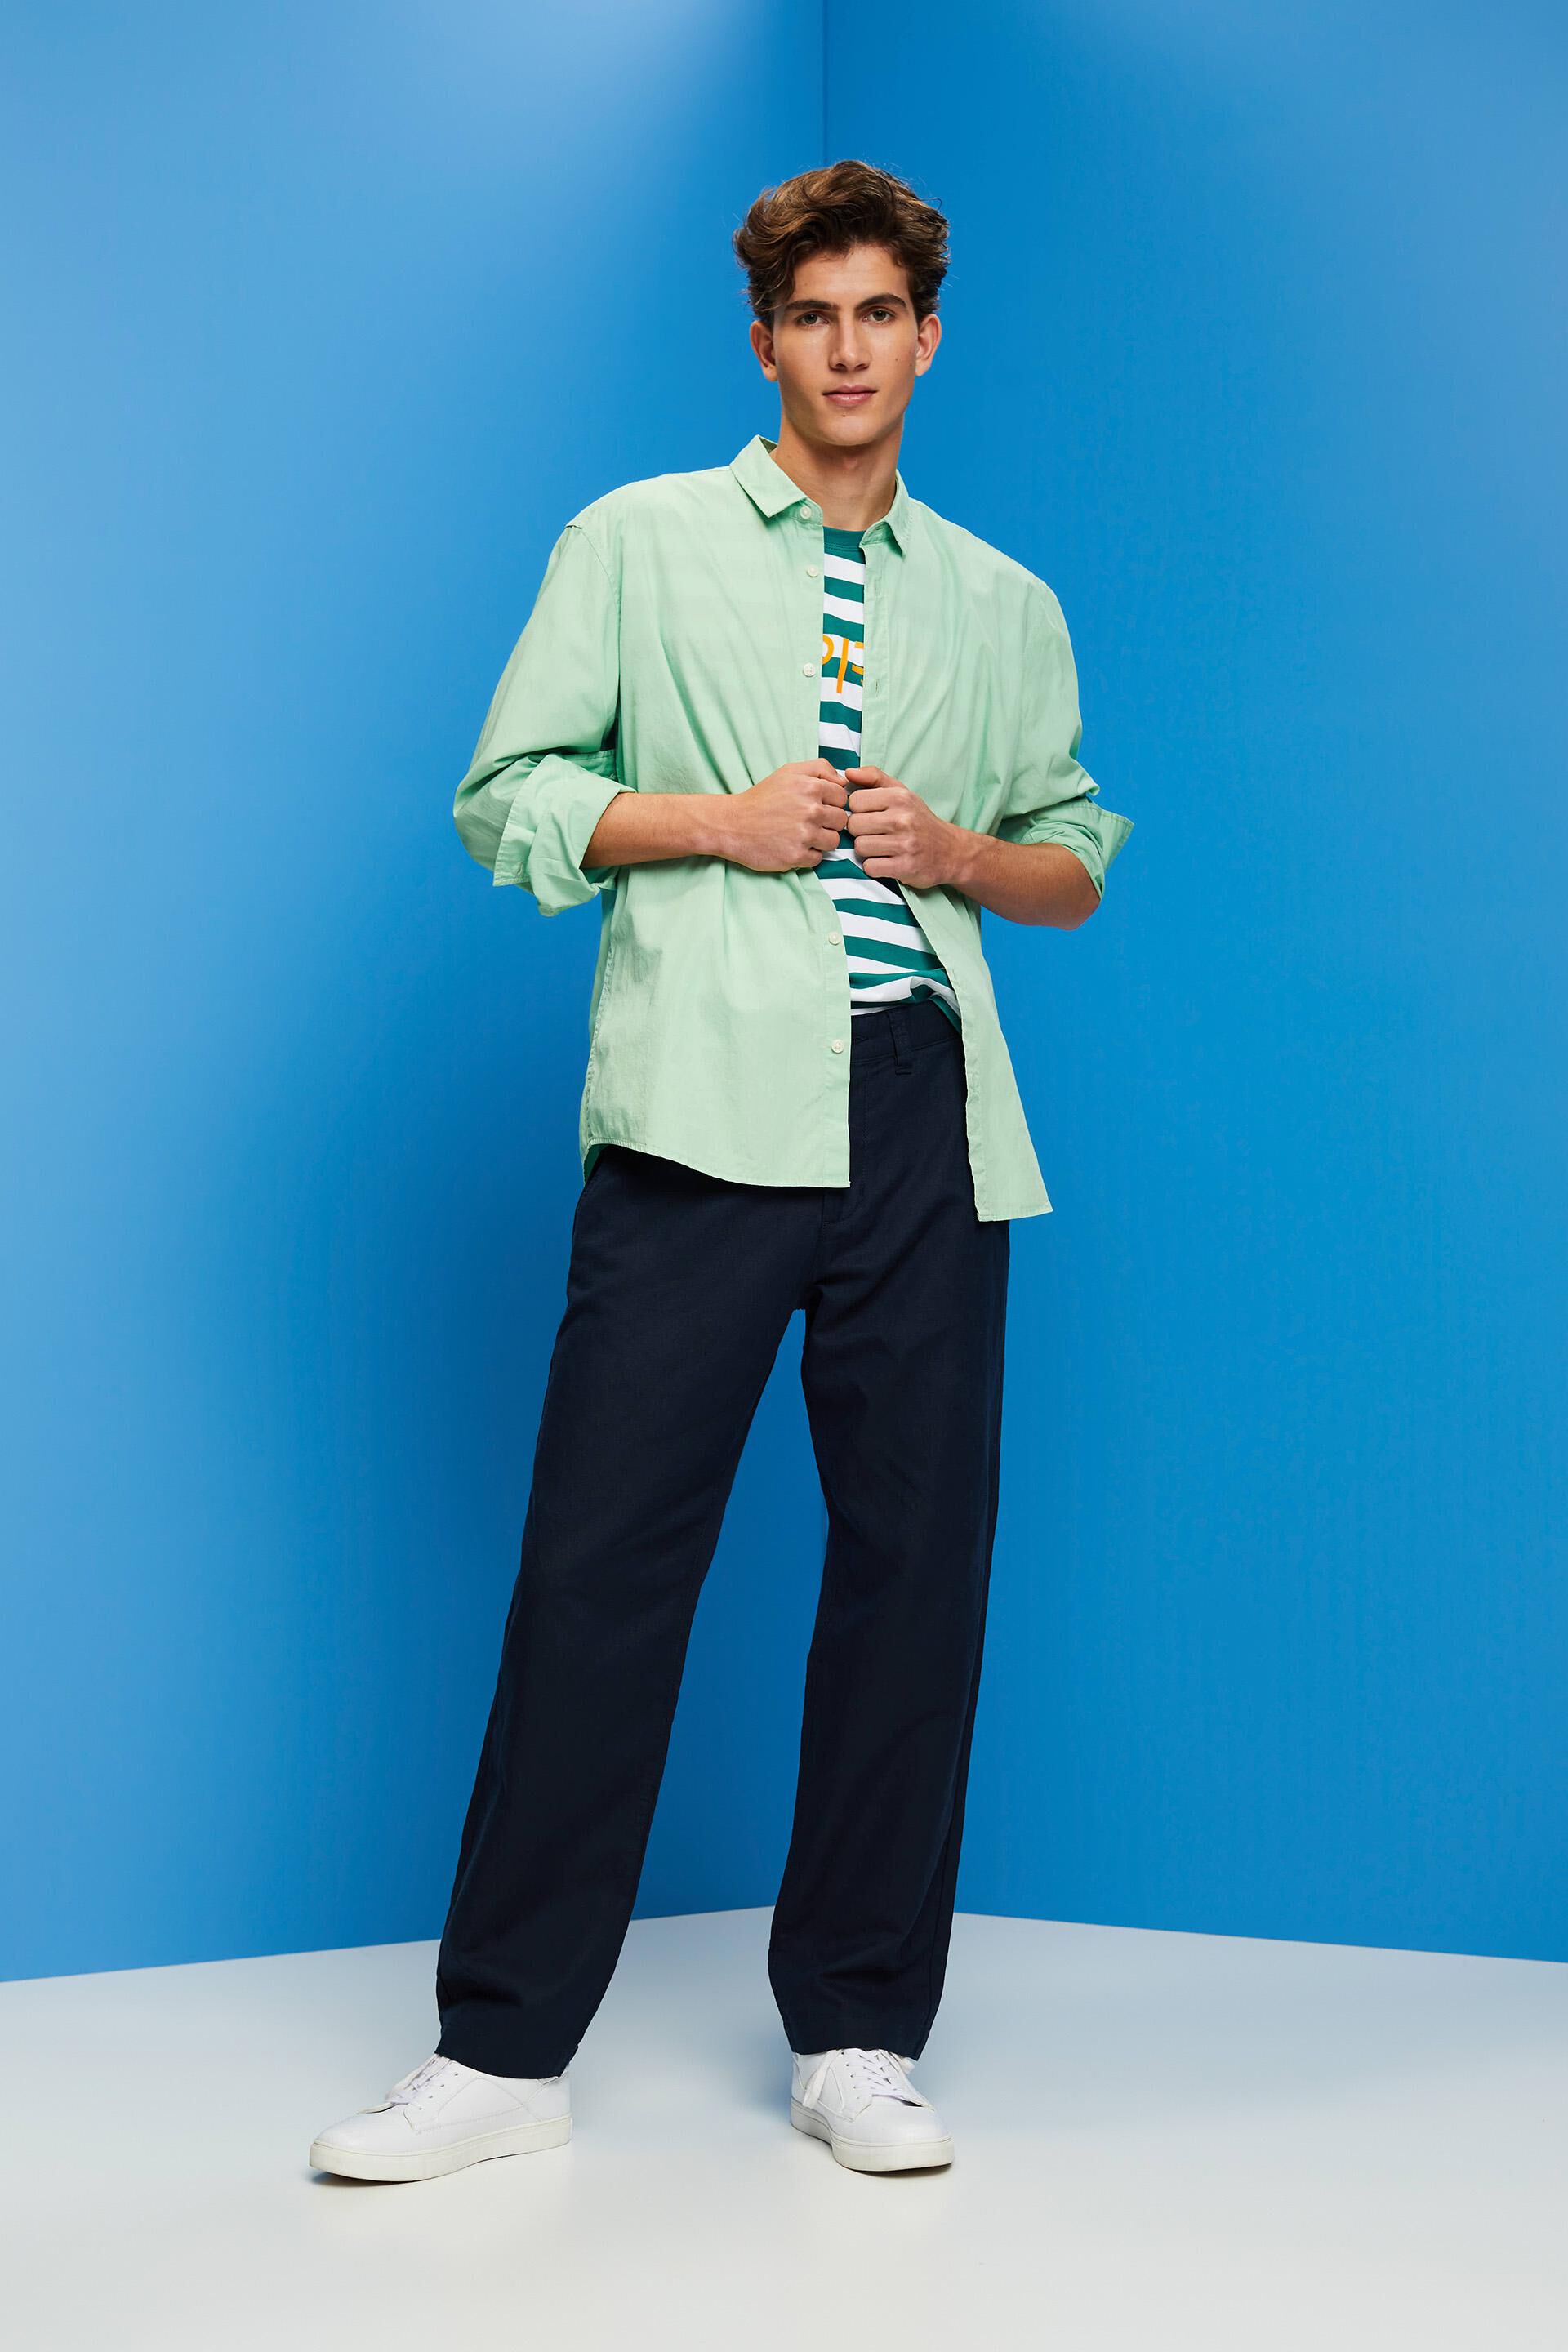 TIE DIE Men's Multi-coloured Patterned Summer Trousers - Etsy UK